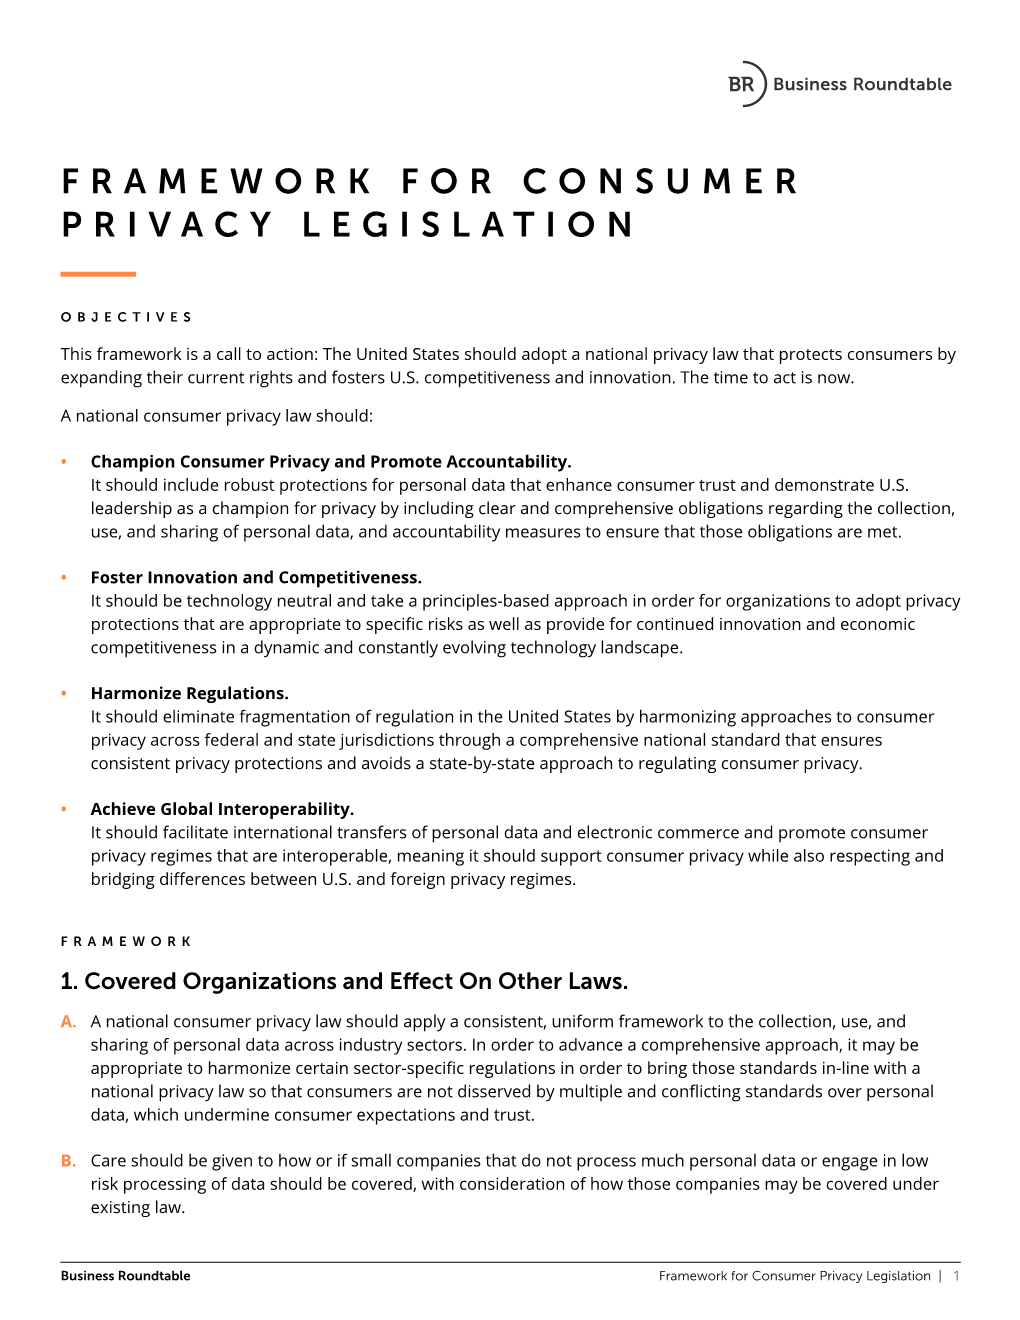 Framework for Consumer Privacy Legislation